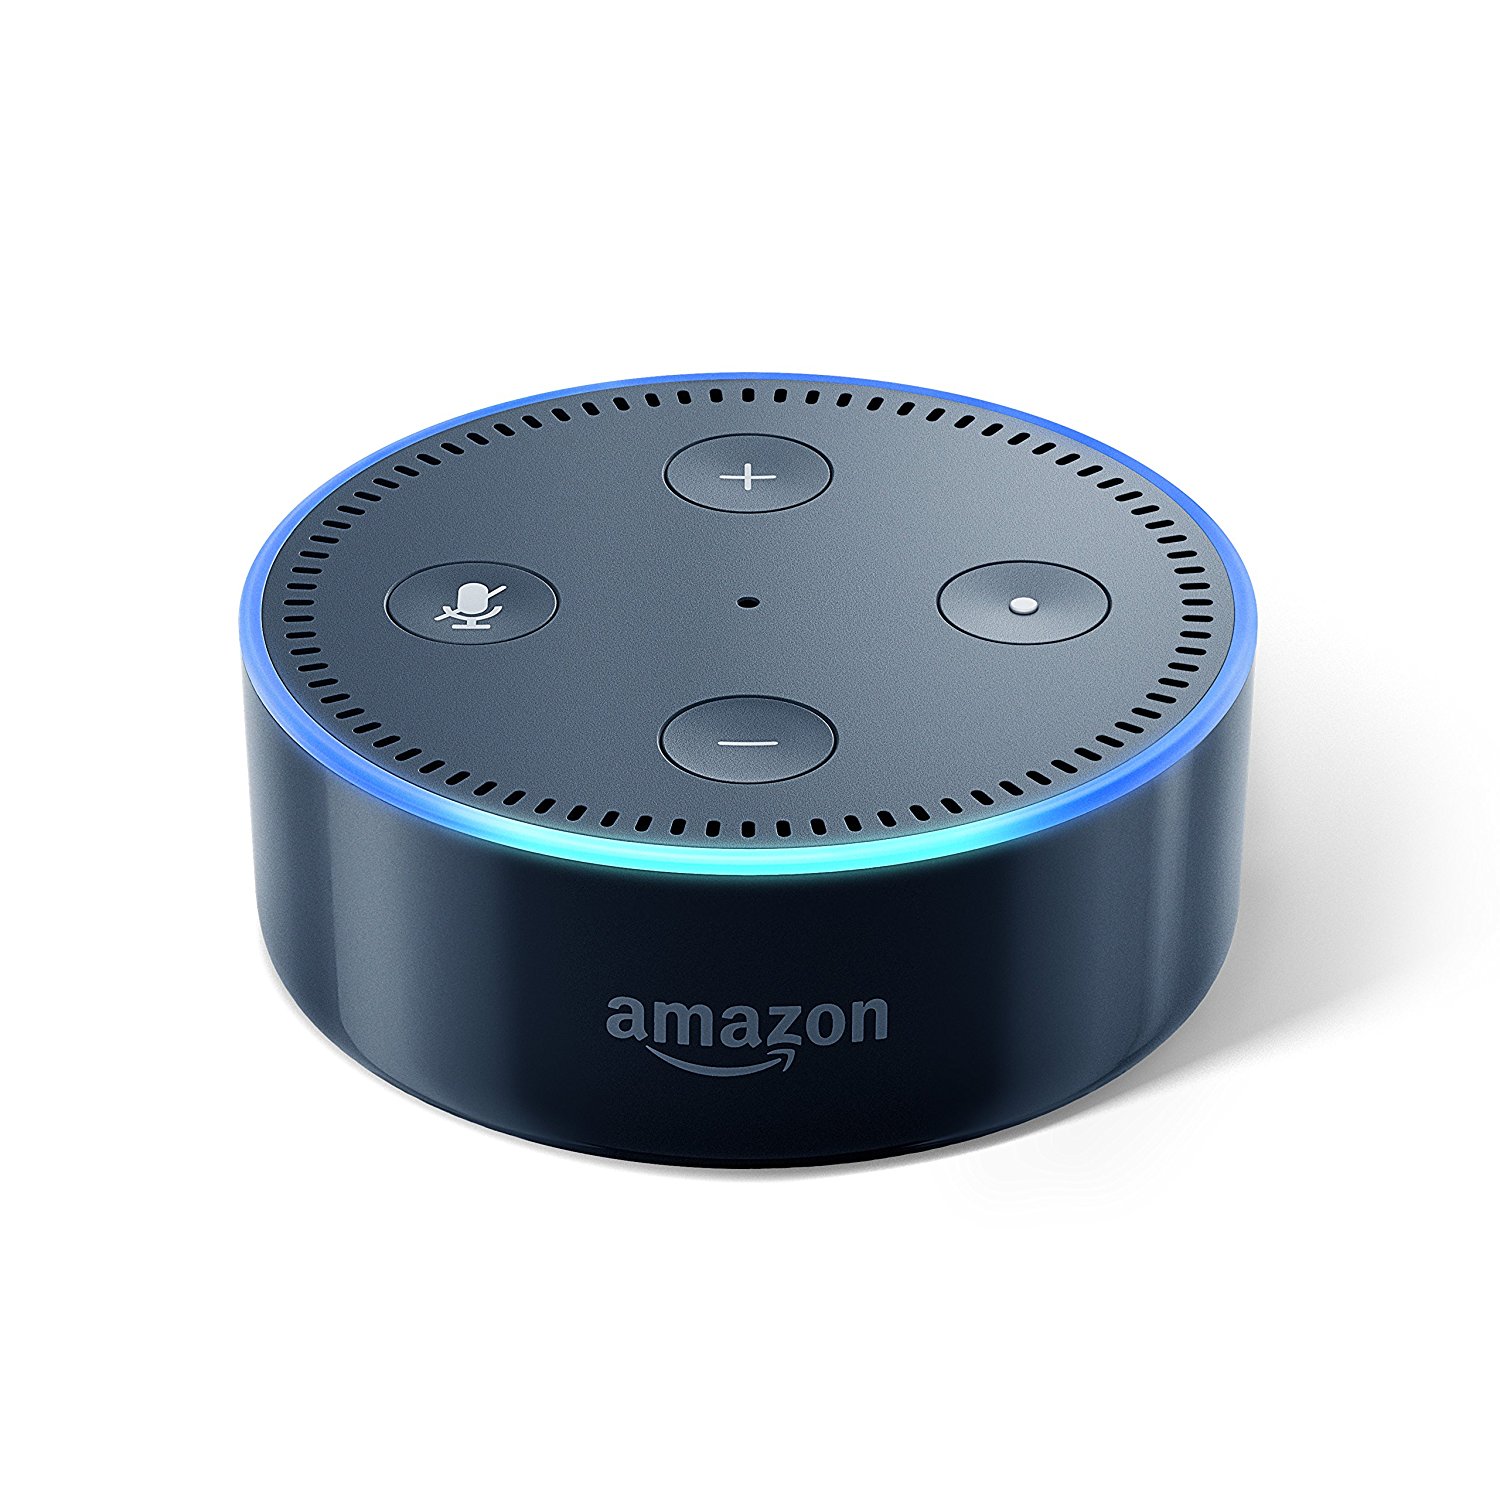 失くしもの防止/家電操作/血圧 体温記録などができる『Amazon Echo』